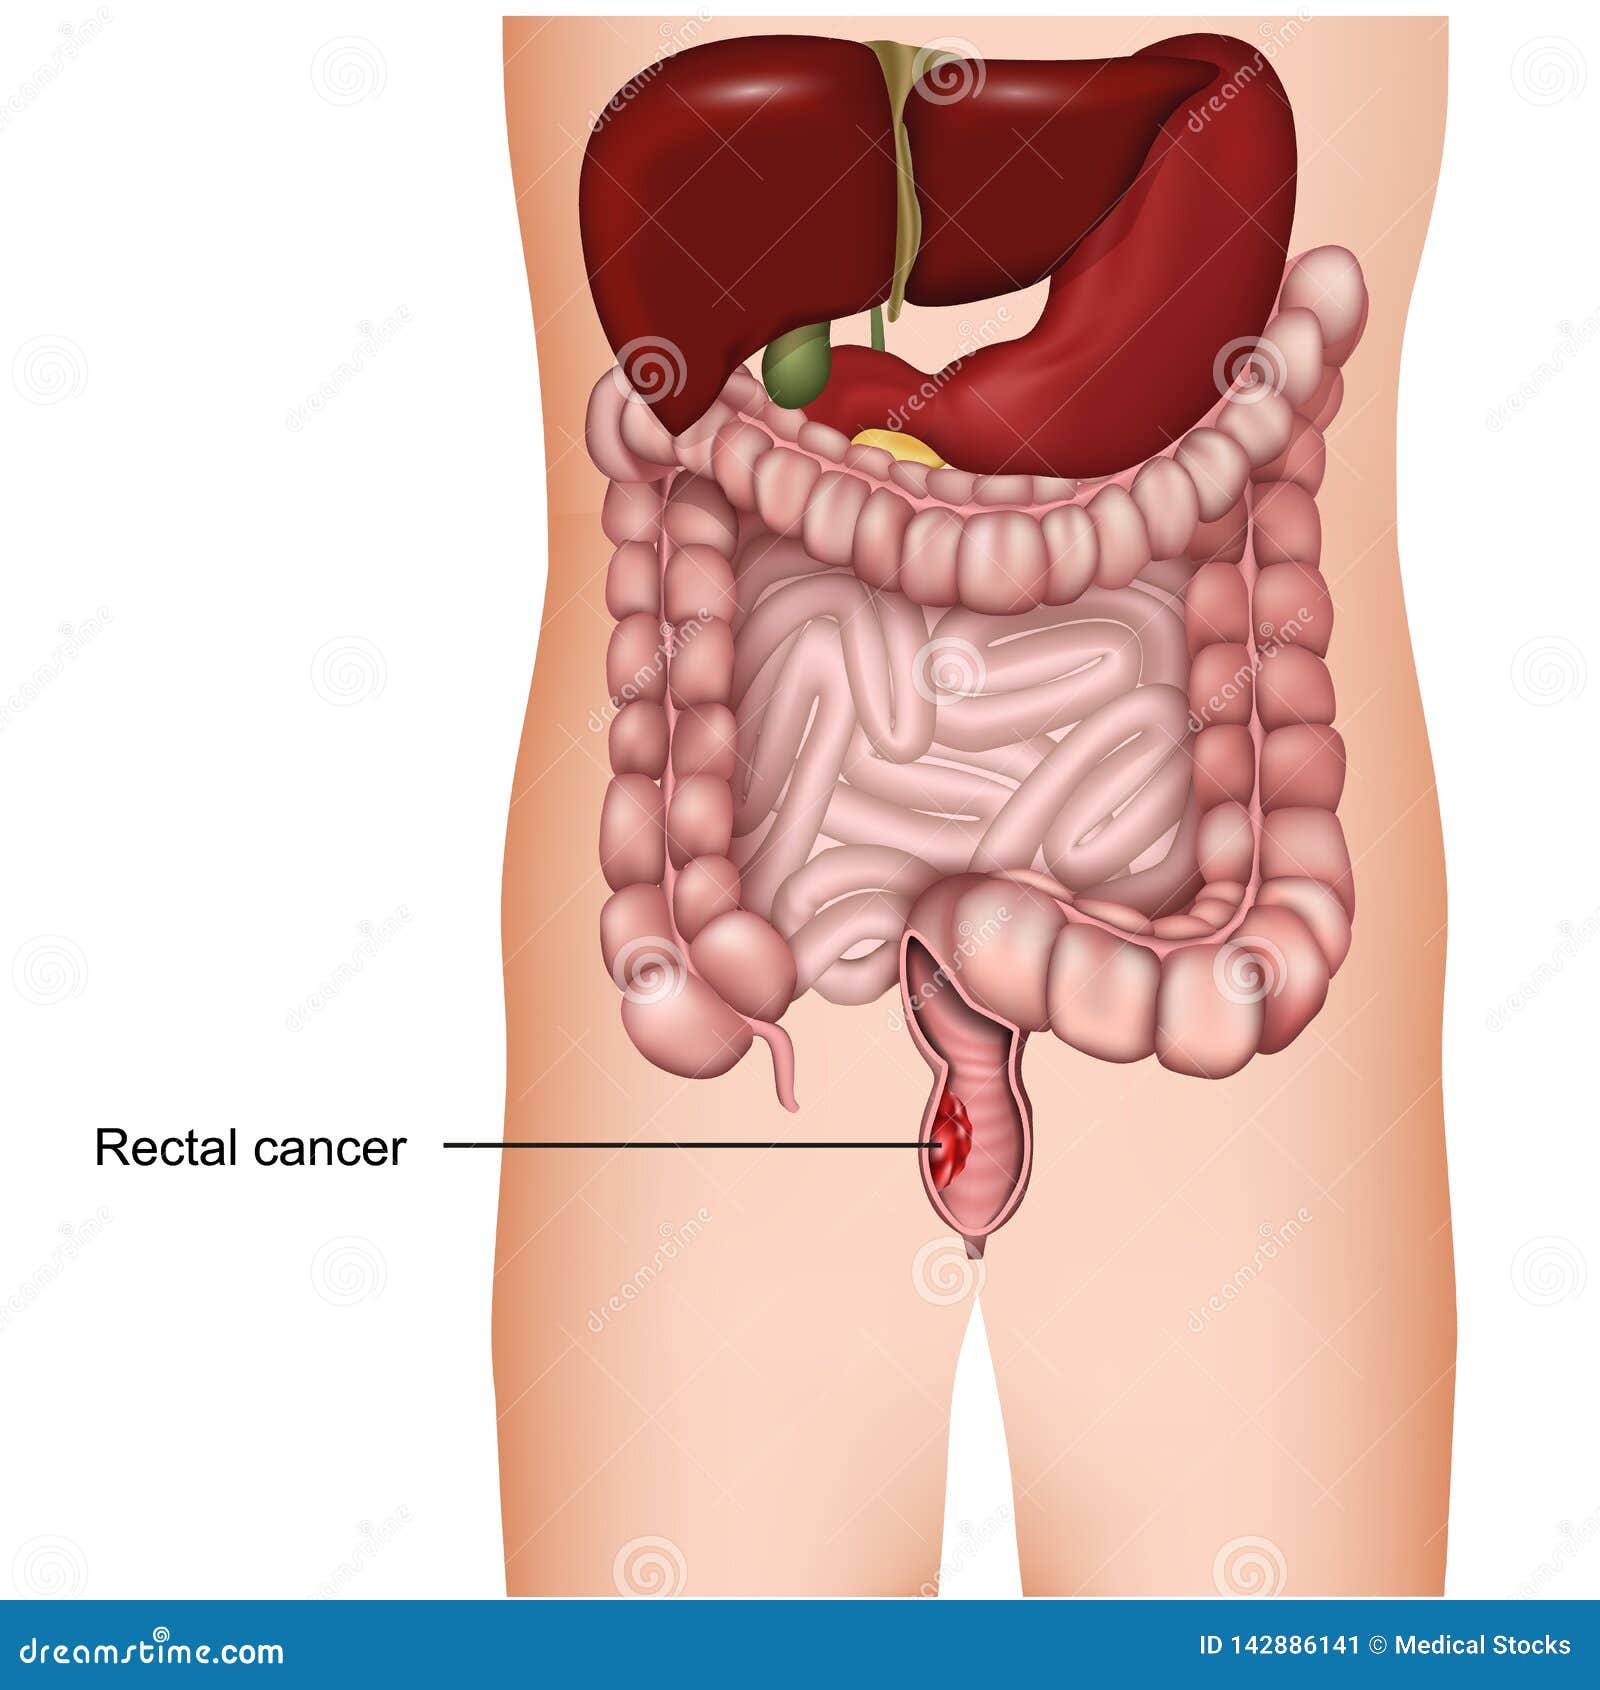 cancer rectal image